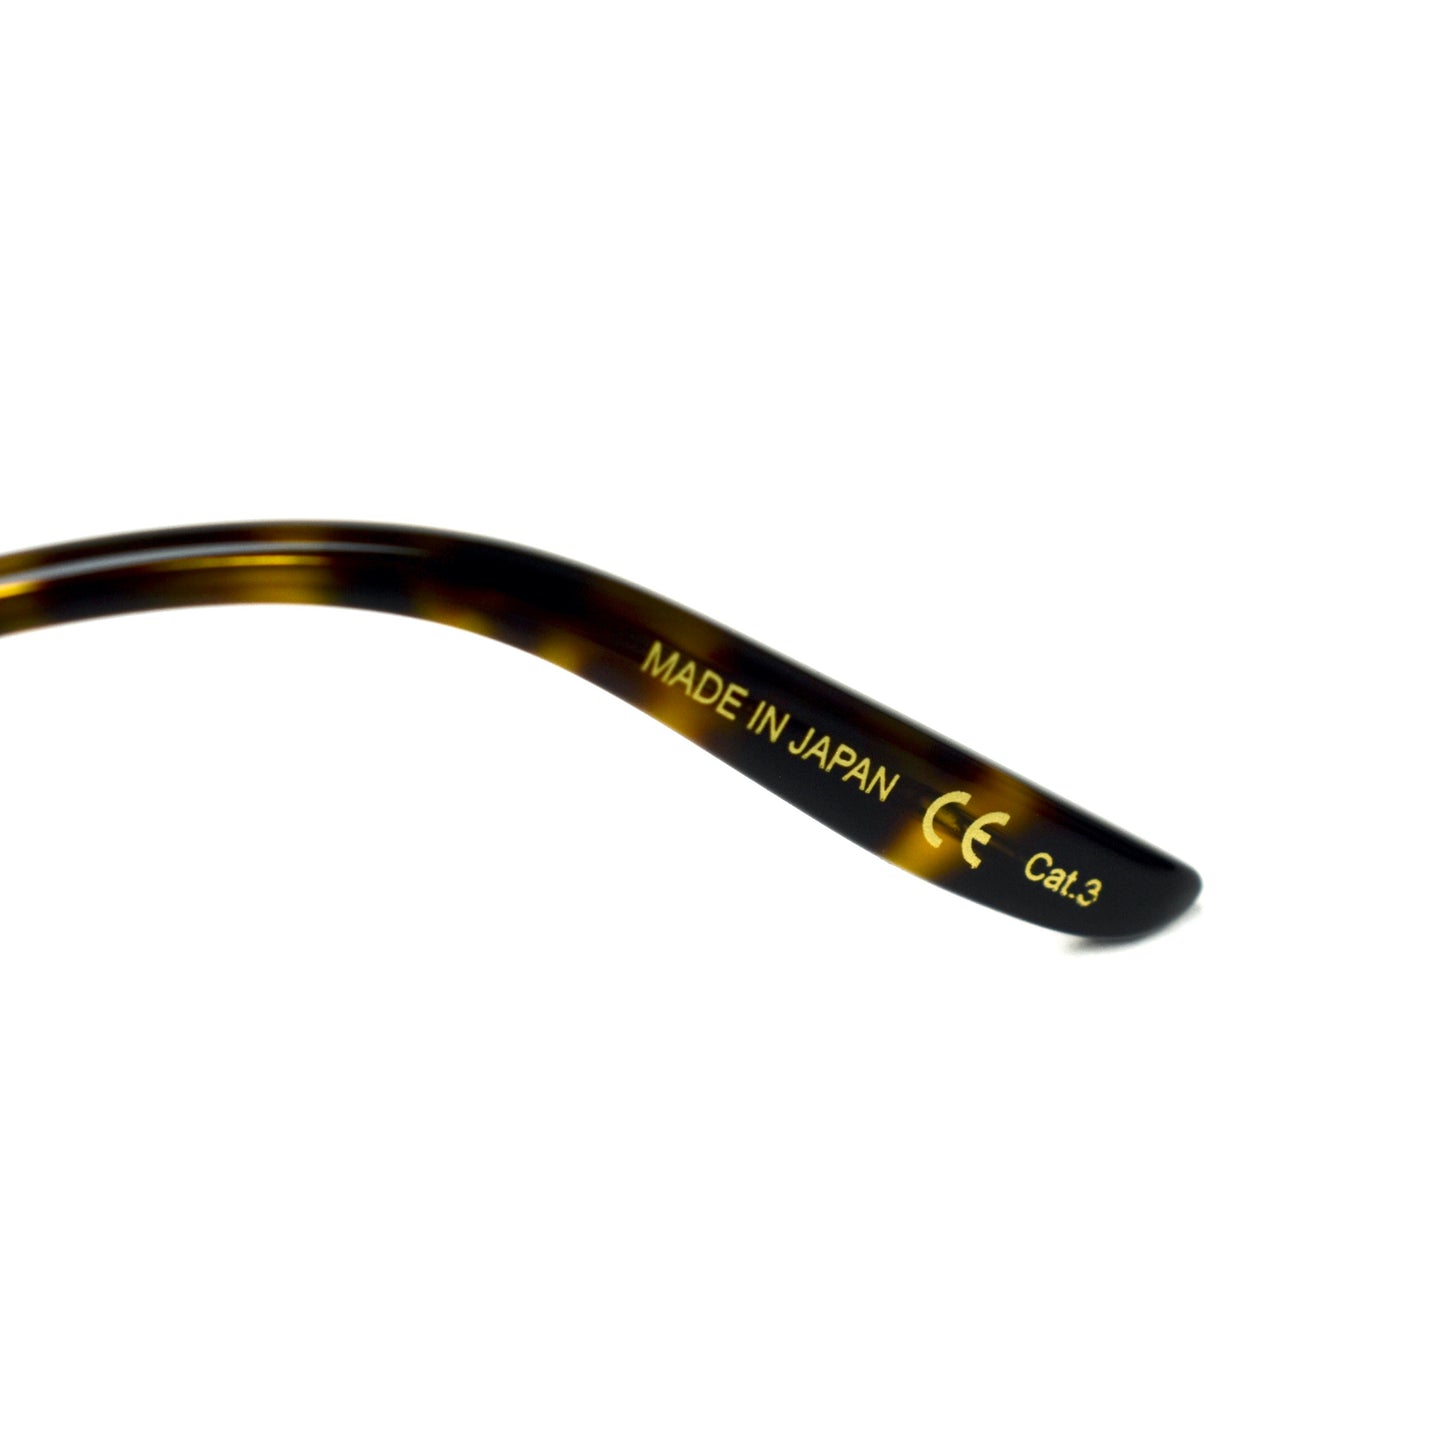 Gucci - GG0062S Black/Gold Aviator Sunglasses